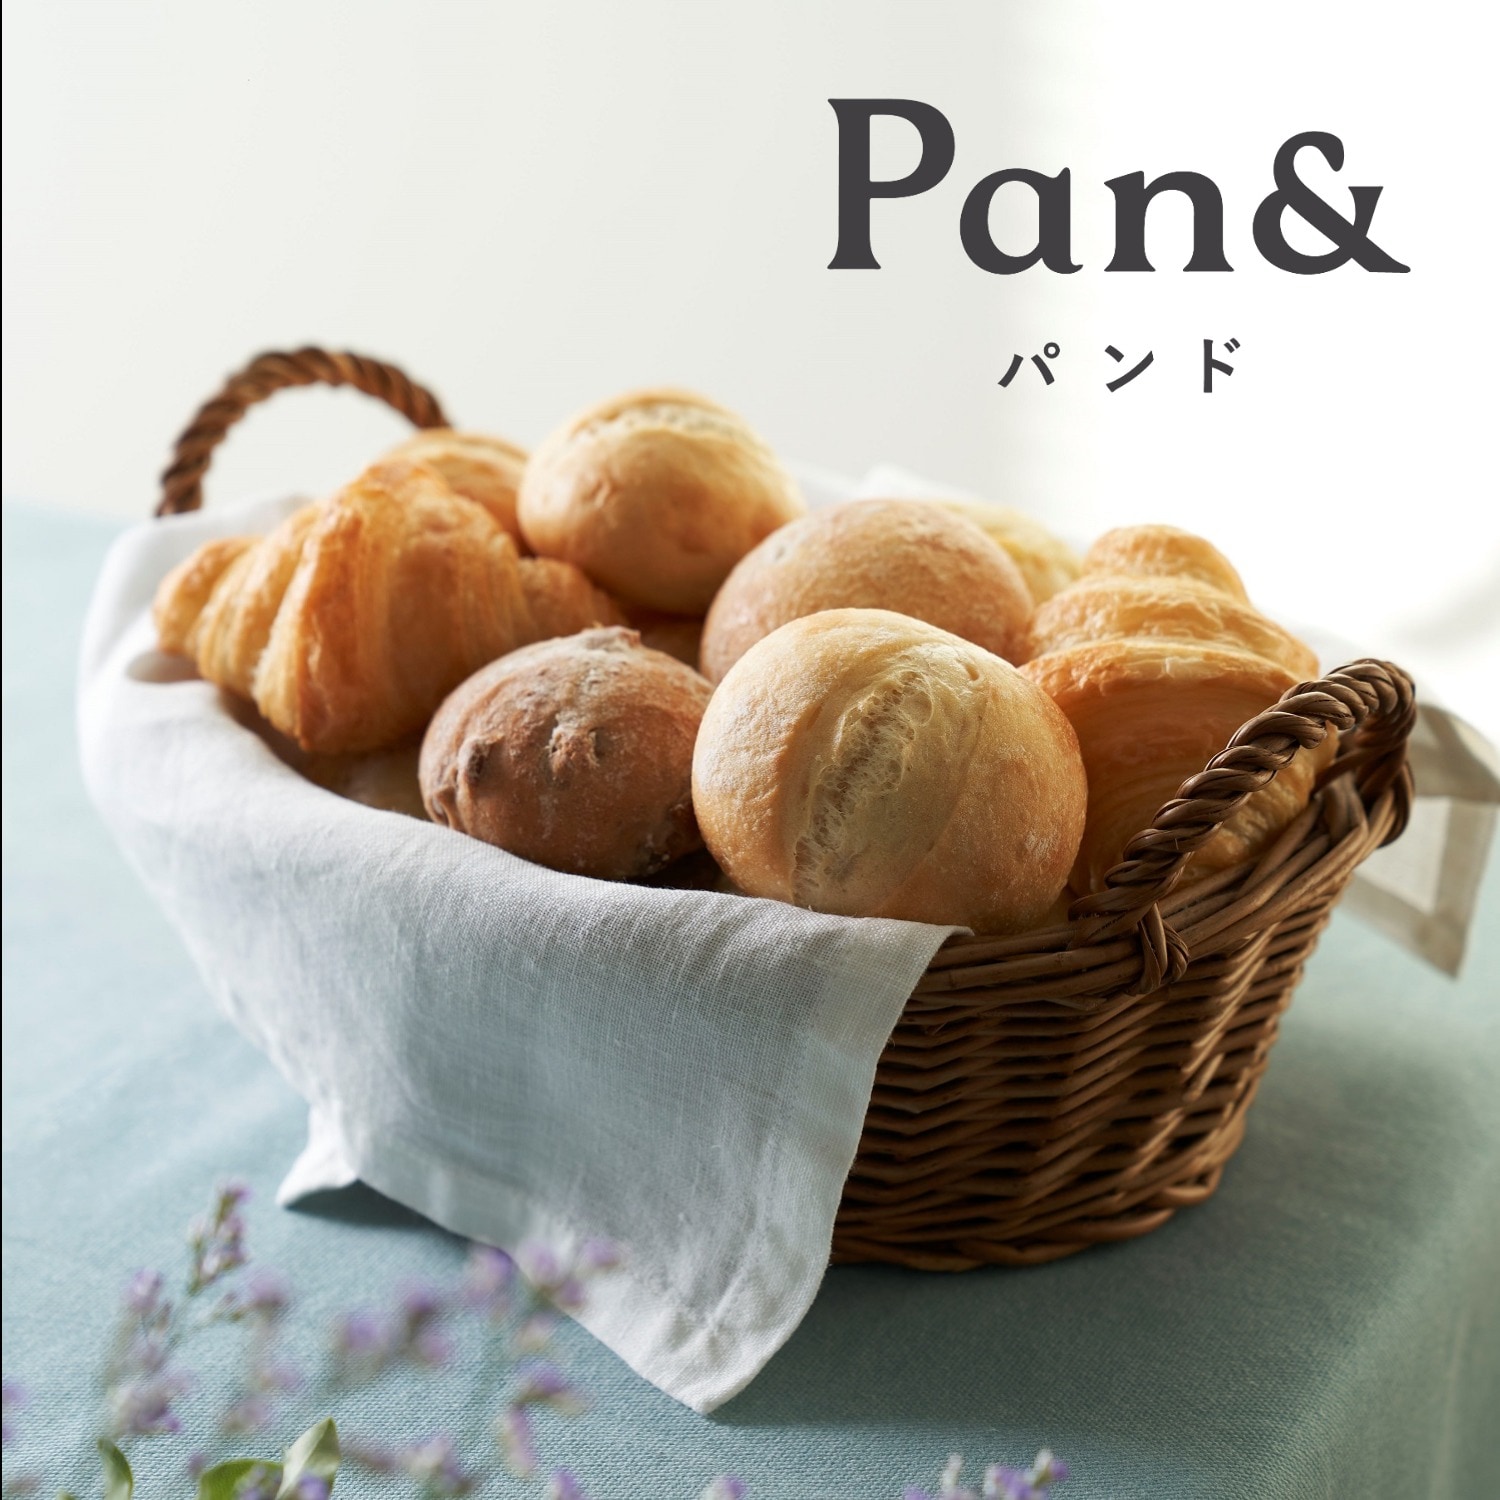 【Pan & 】Pan & バラエティ5種セット画像